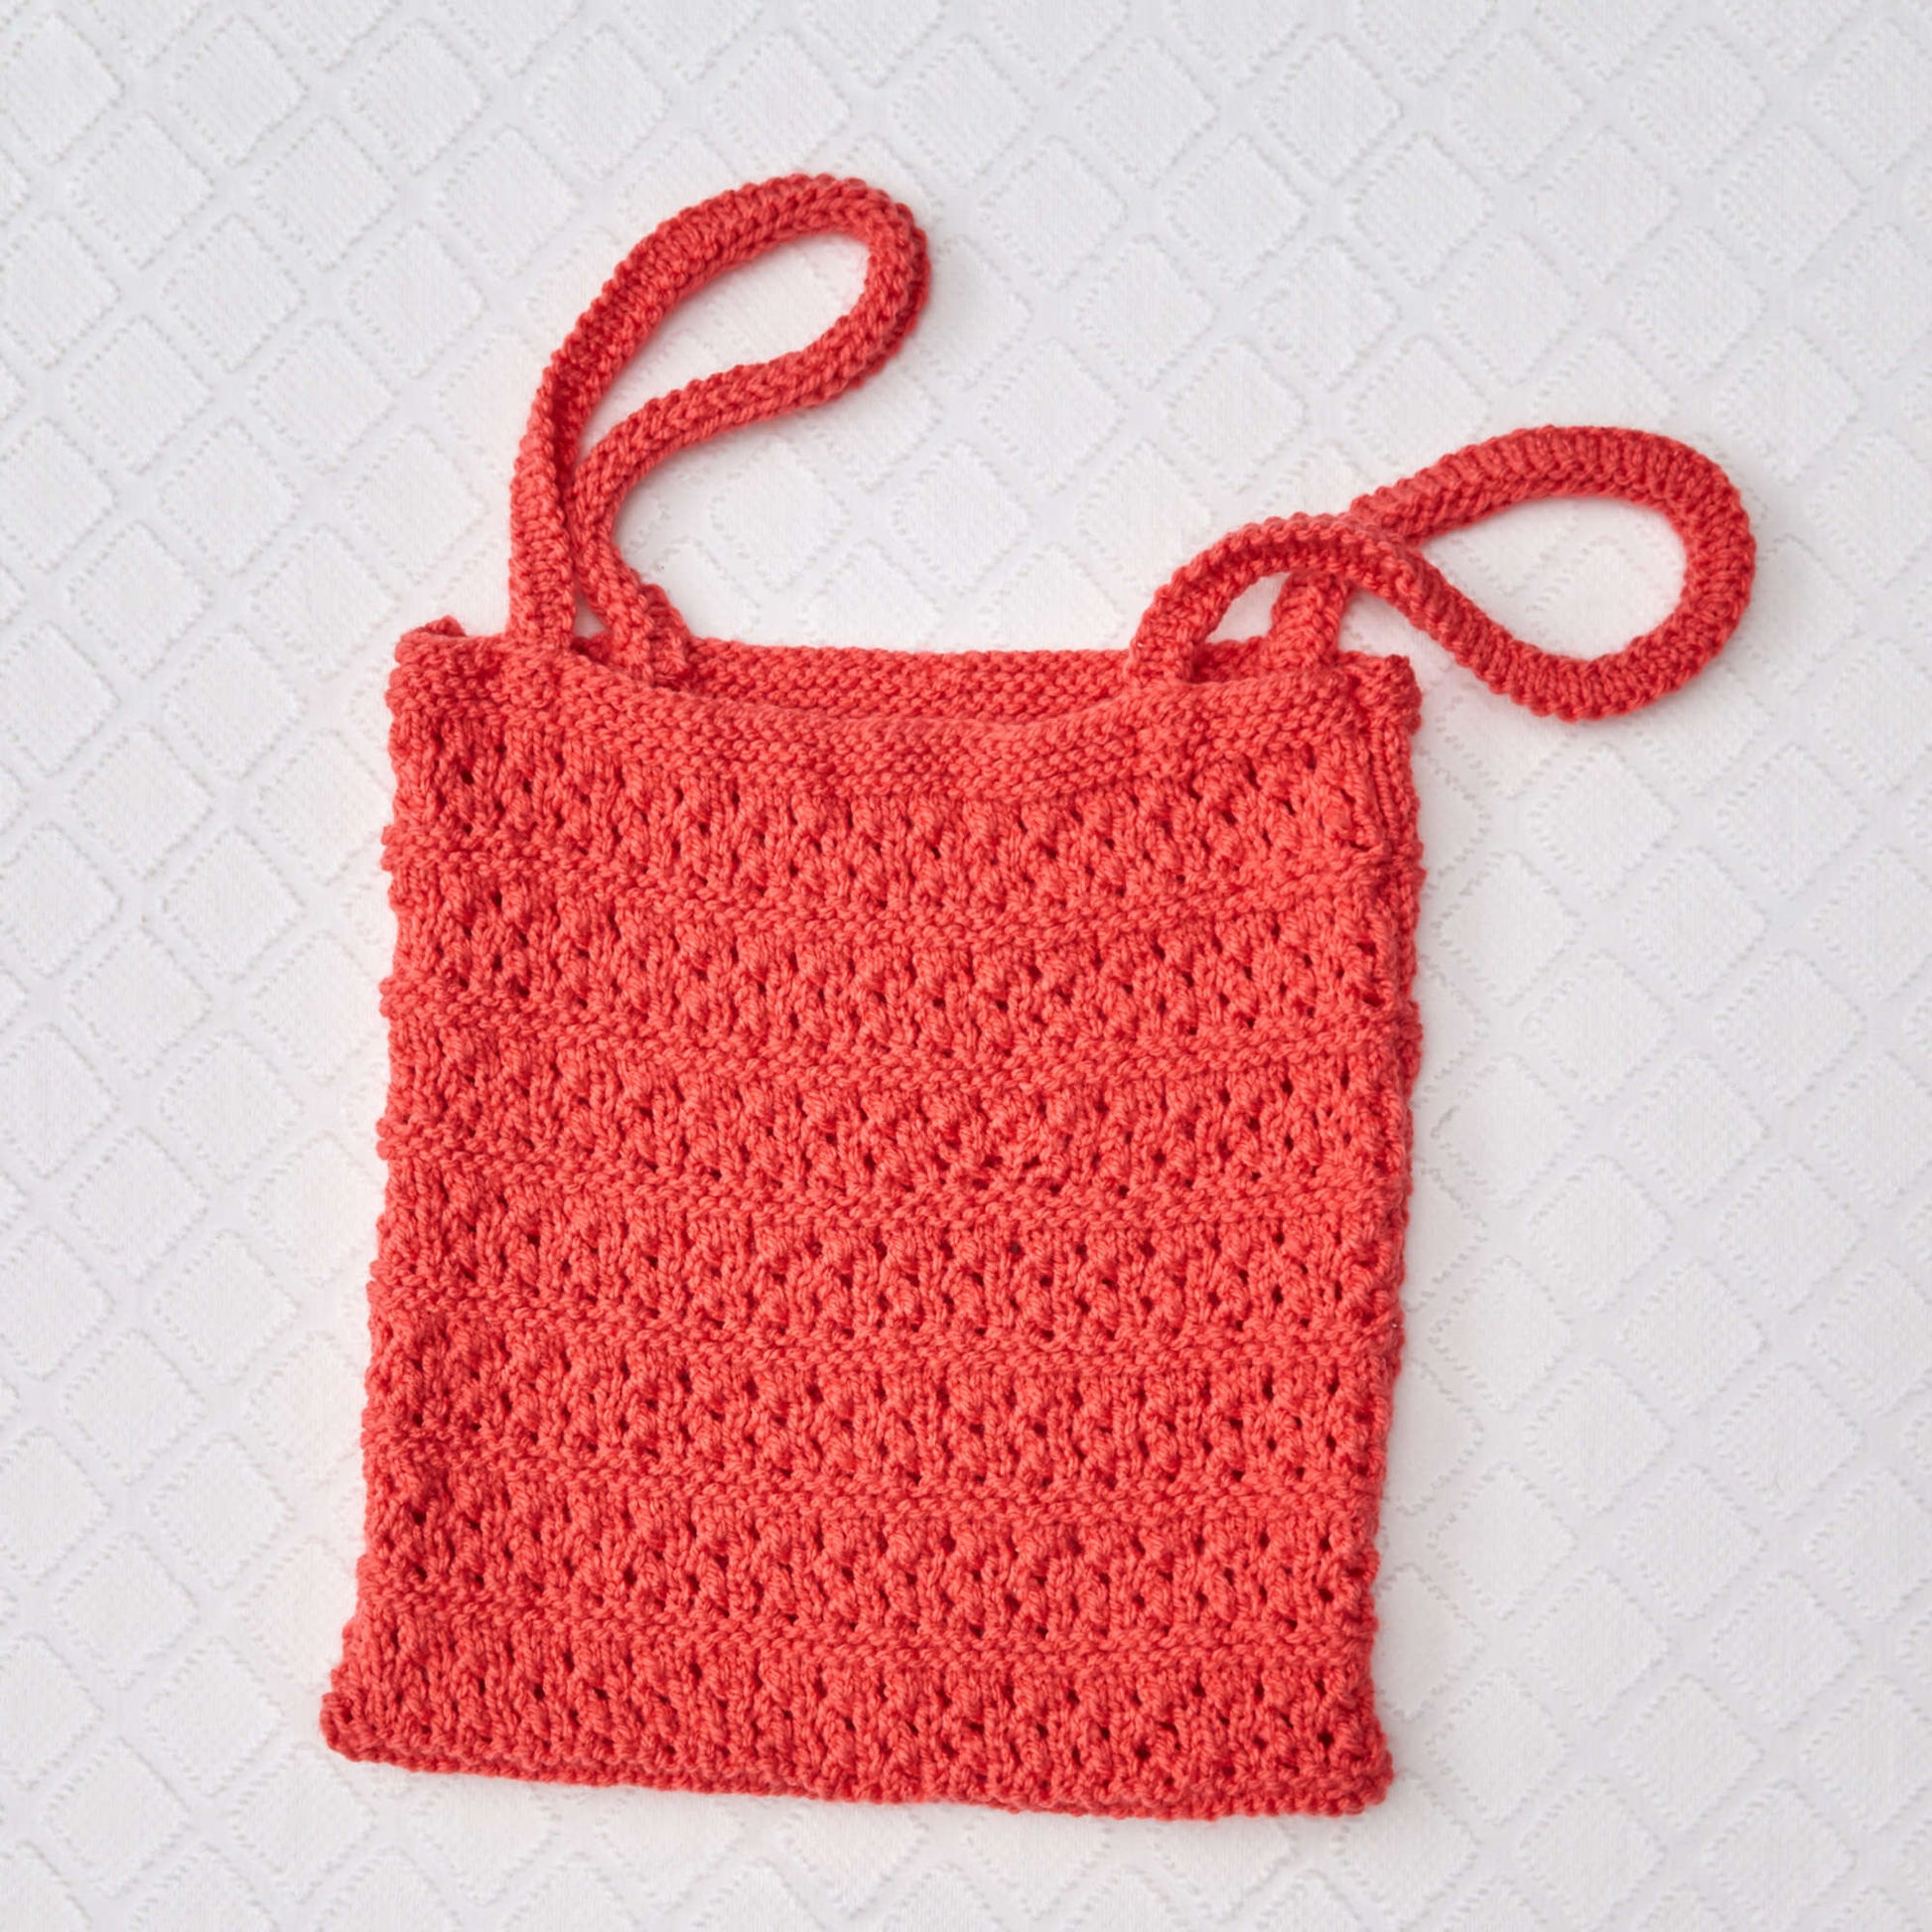 Free Red Heart Breezy Knit Market Bag Pattern